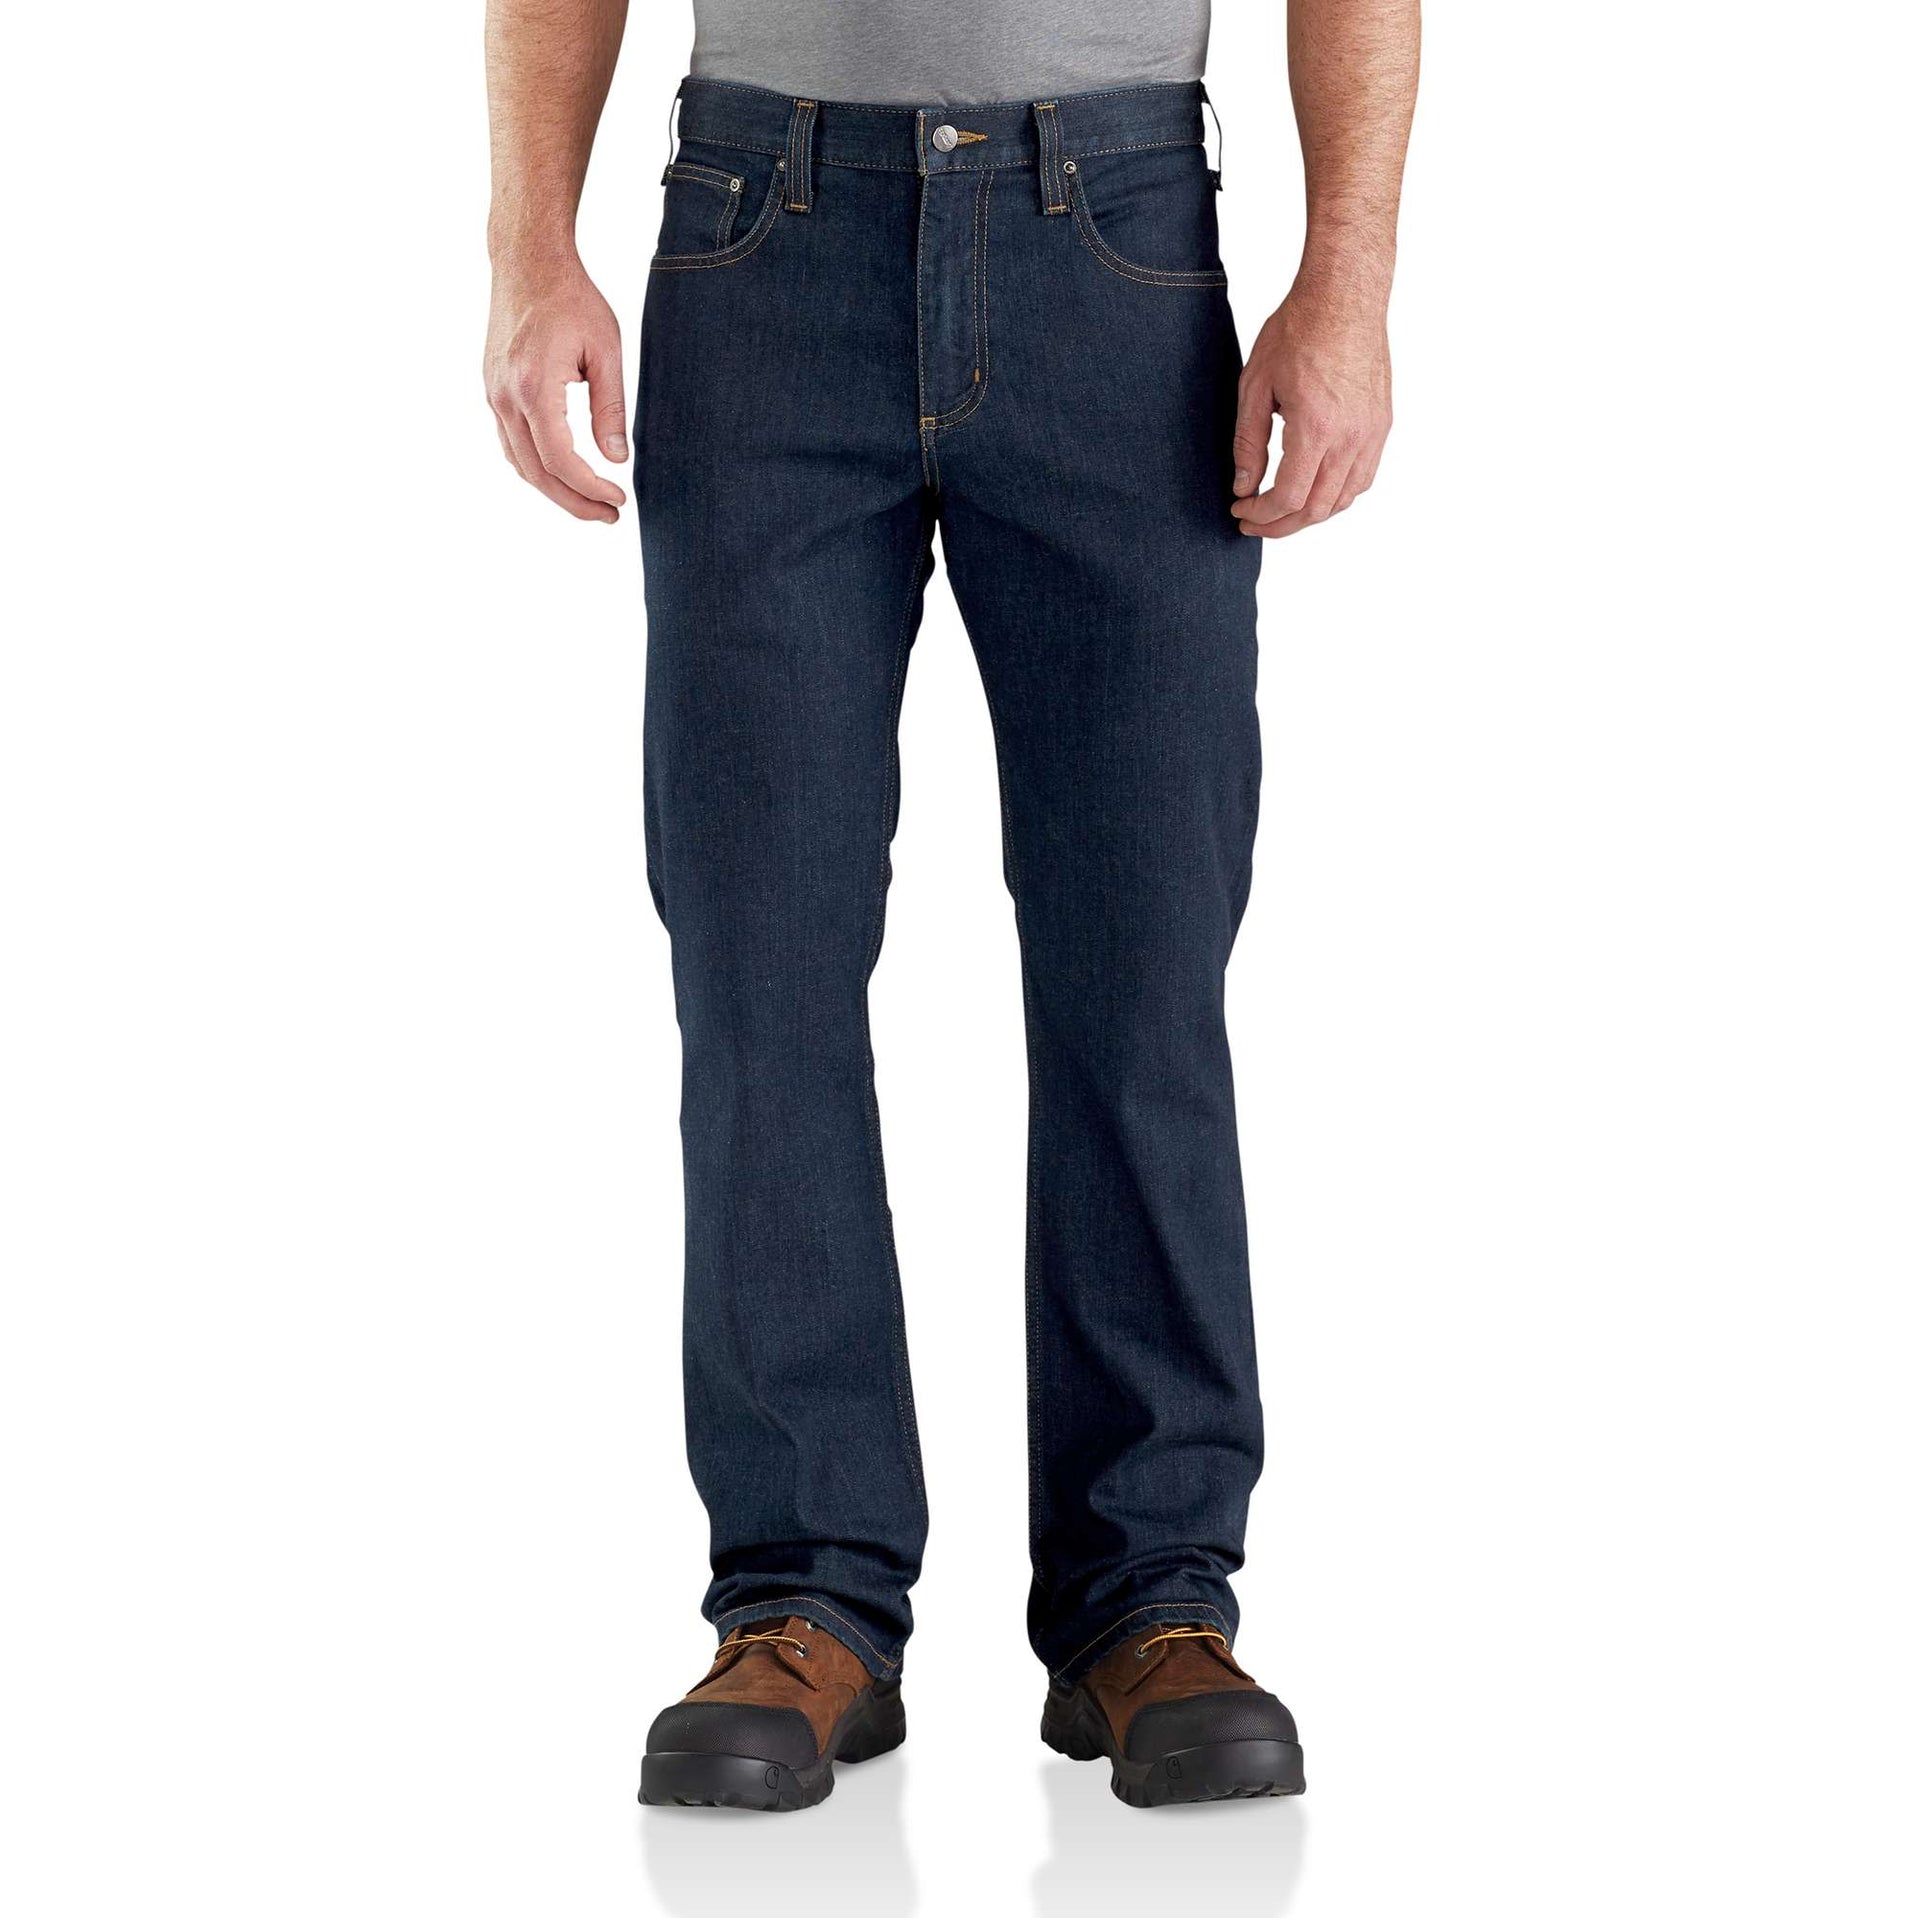 Carhartt Rugged Flex Relaxed Fit Tapered джинсы - самые выгодные цены ▷  FC-Moto